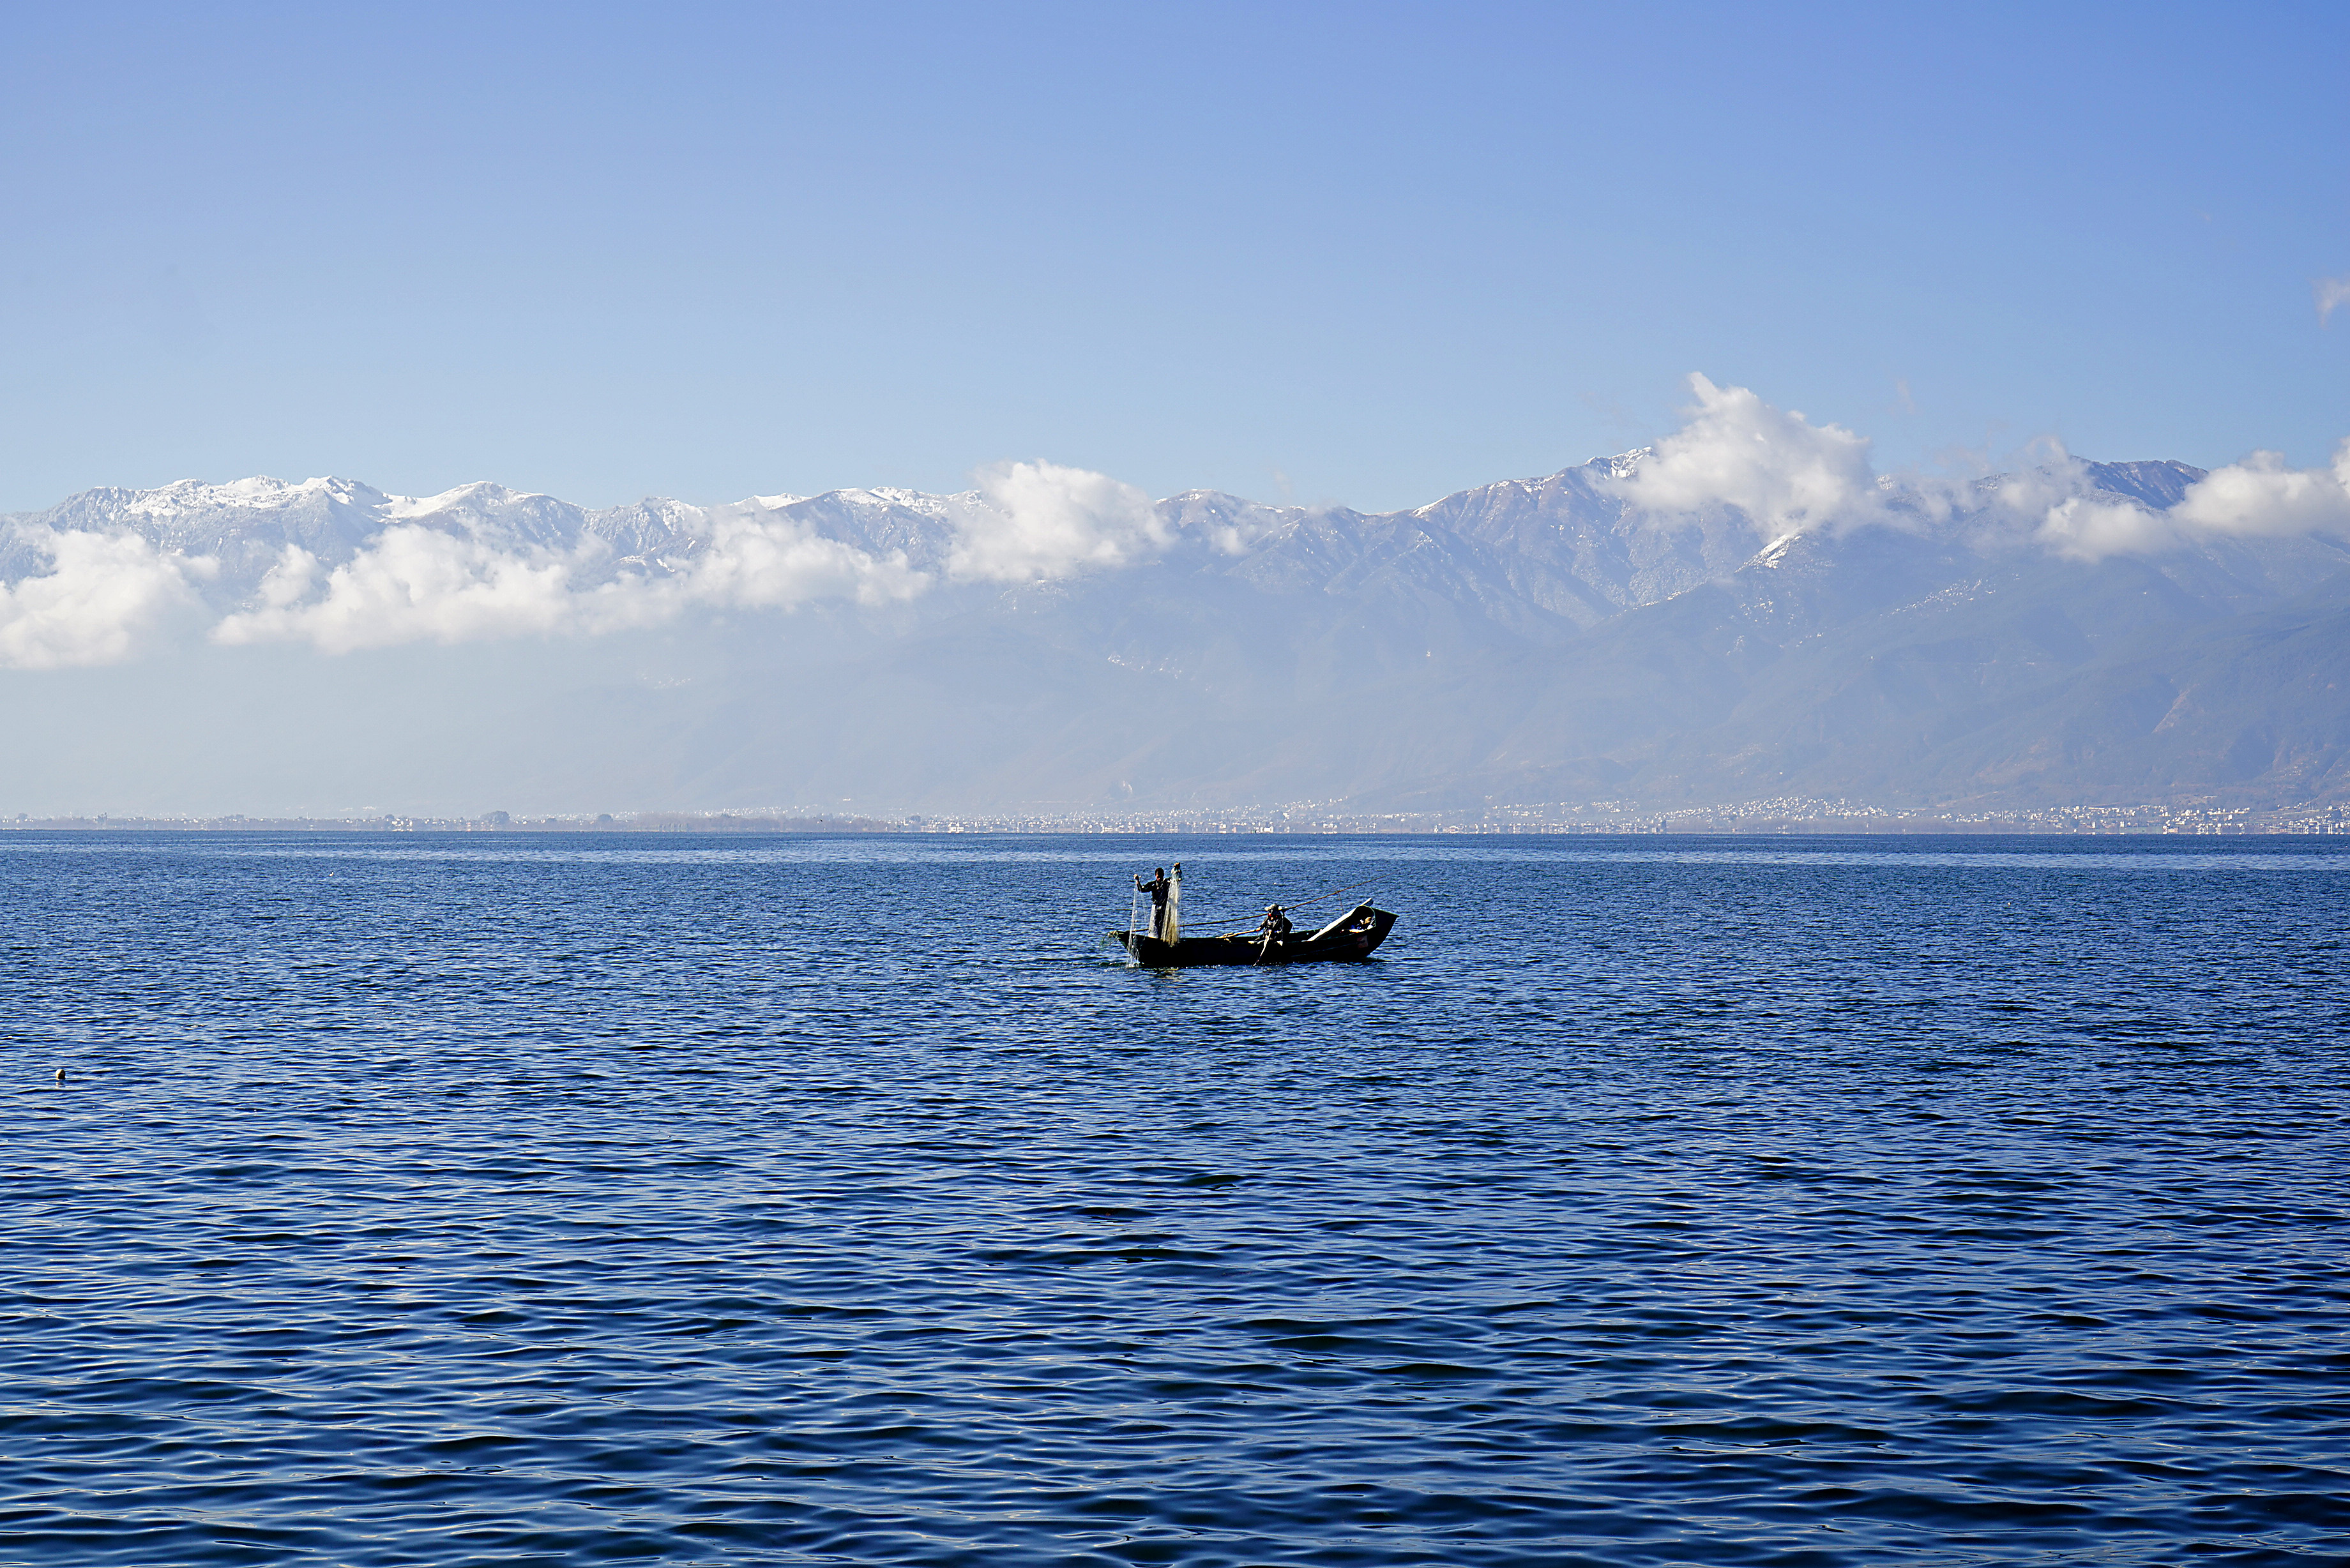 洱海风景图片 拍照图片